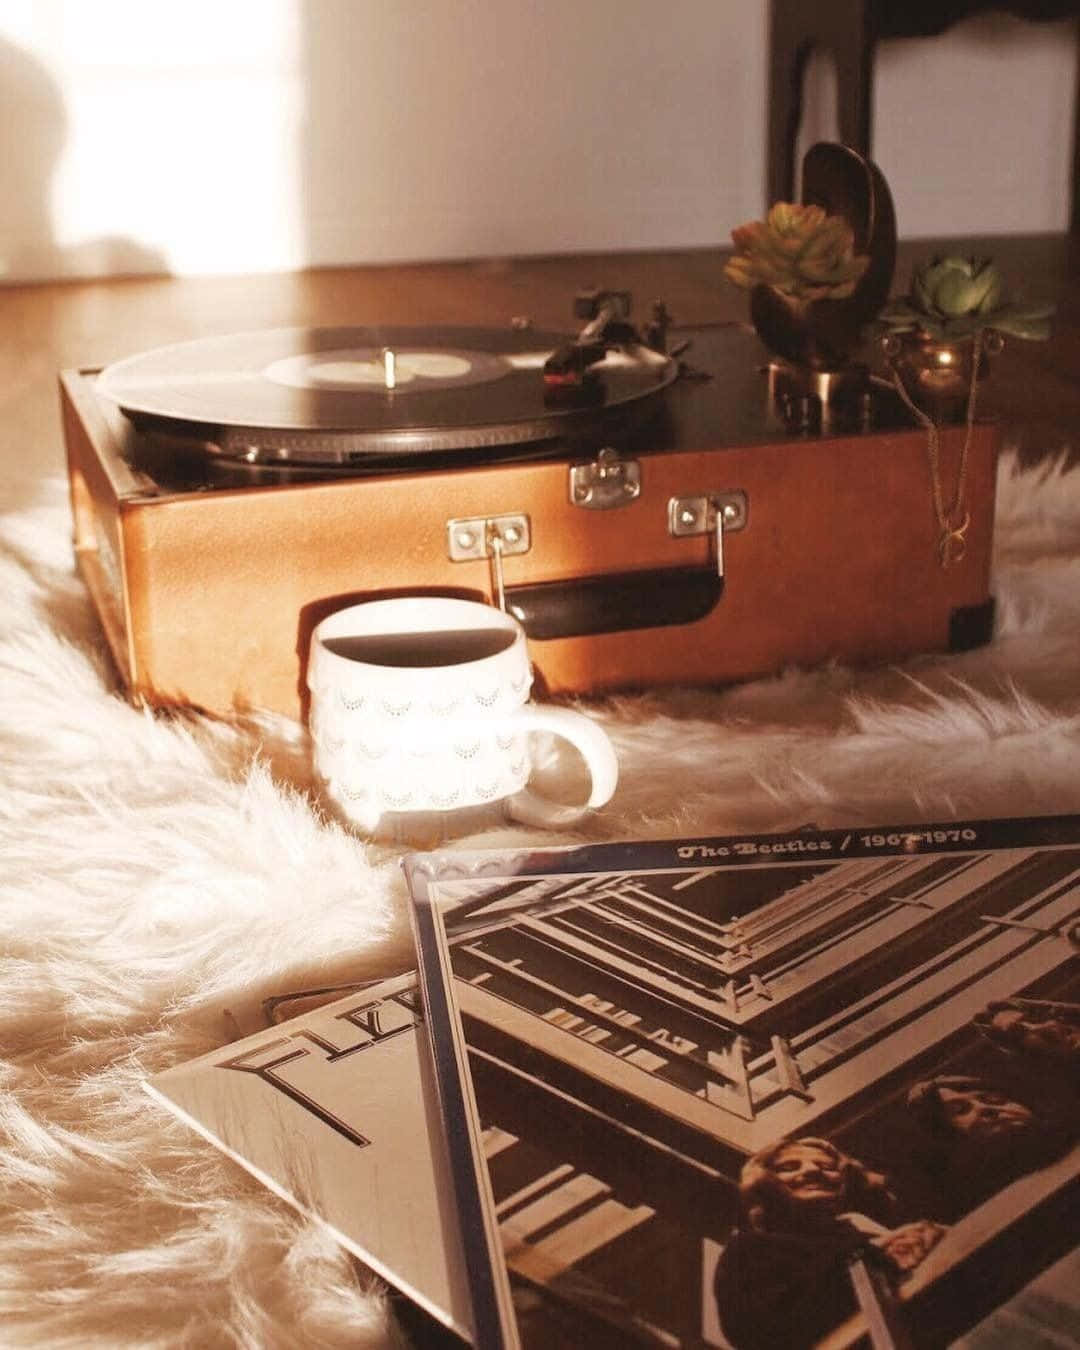 Engrammofon, Kaffe Og En Bog På Et Tæppe